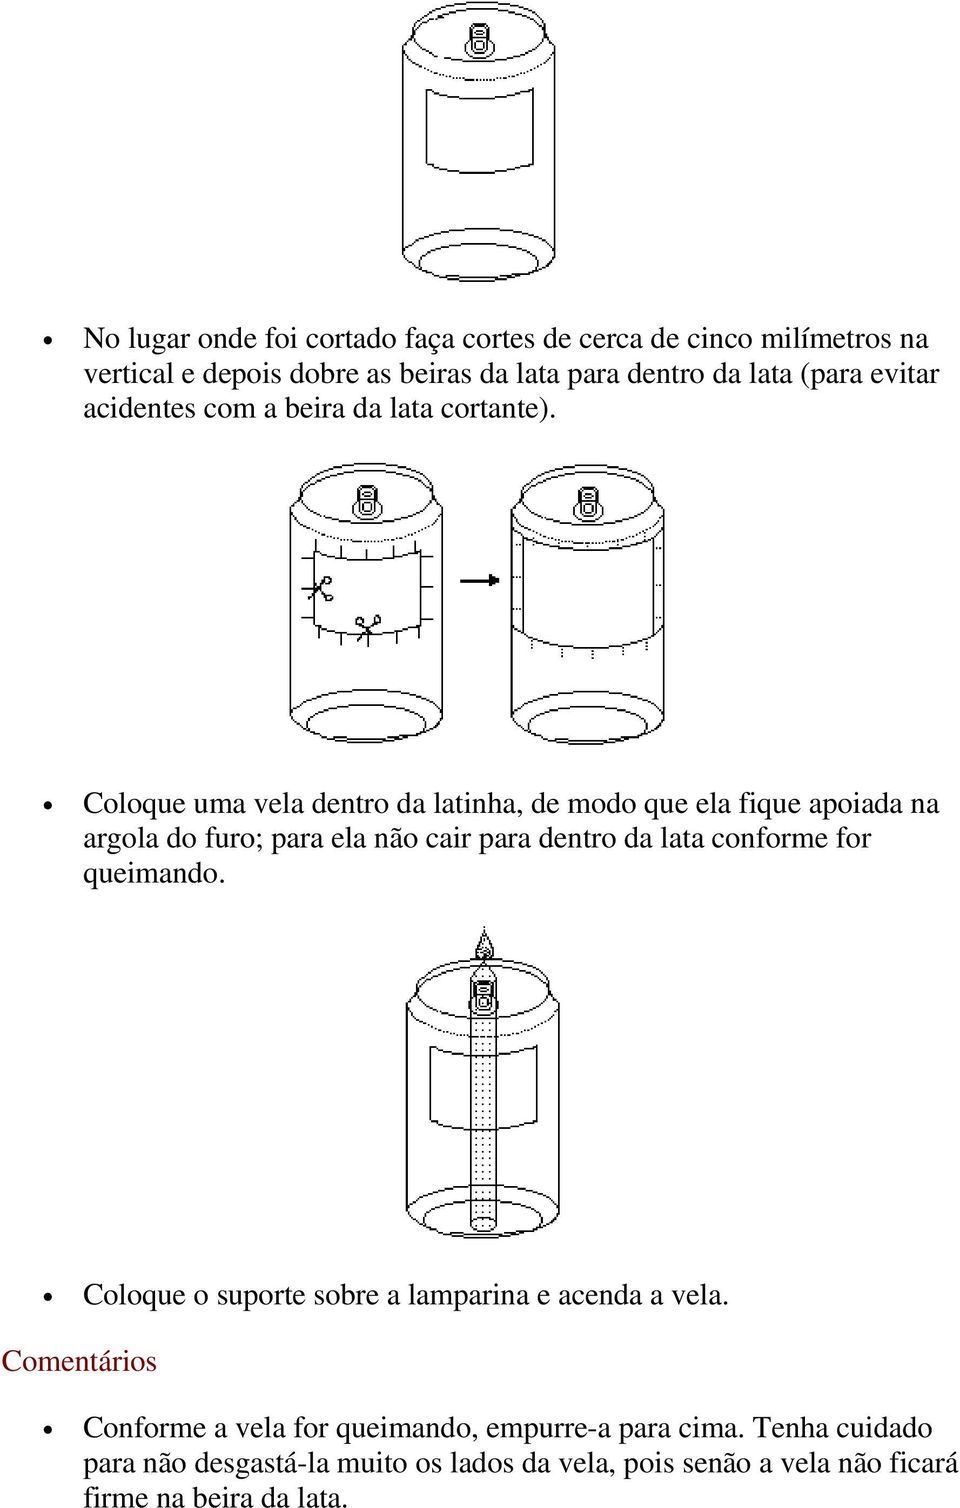 Coloque uma vela dentro da latinha, de modo que ela fique apoiada na argola do furo; para ela não cair para dentro da lata conforme for